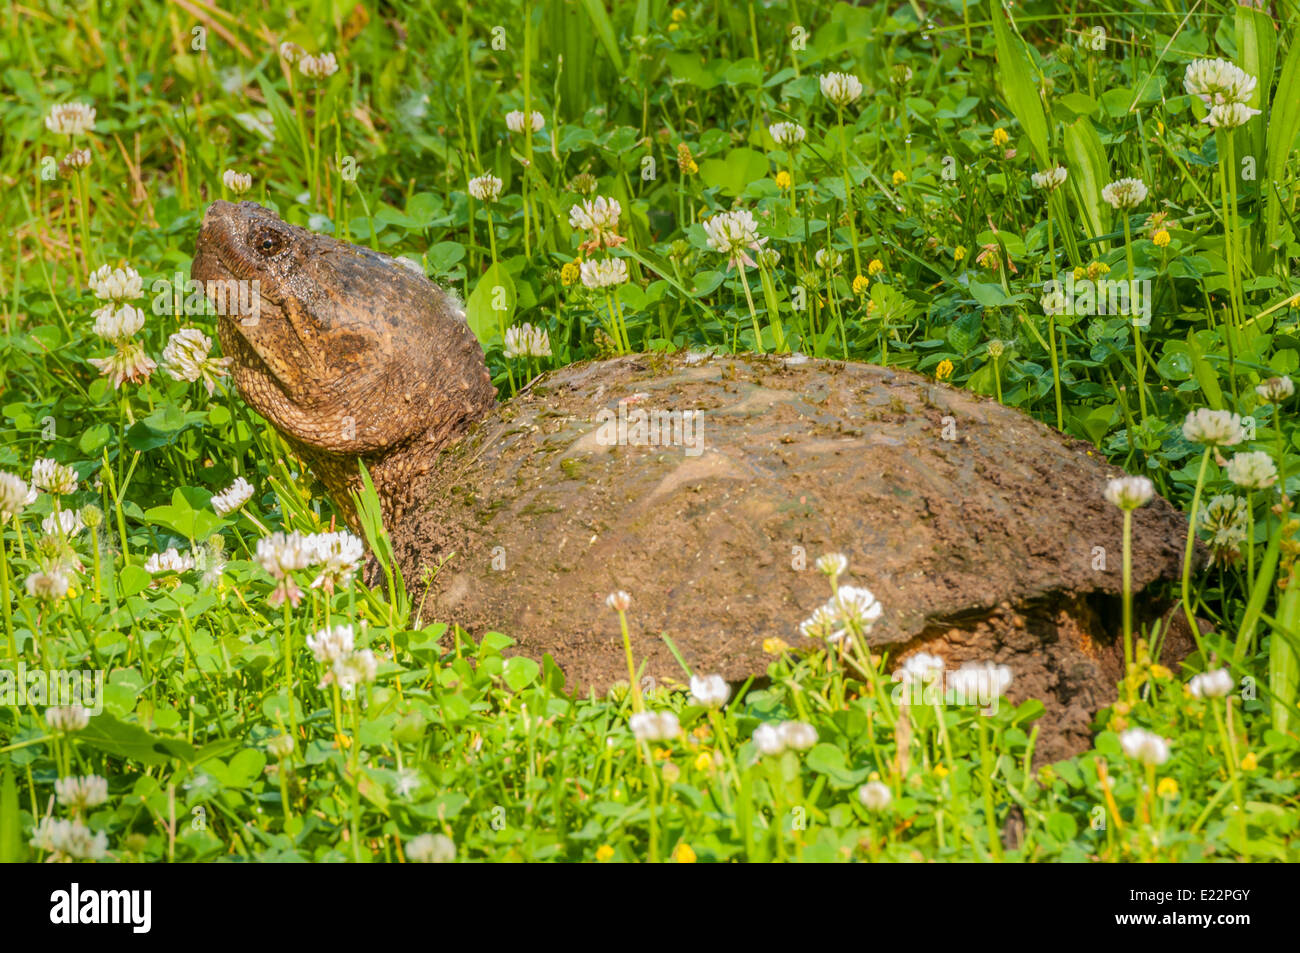 La tortuga de cizallamiento sentado en un campo de trébol. Foto de stock